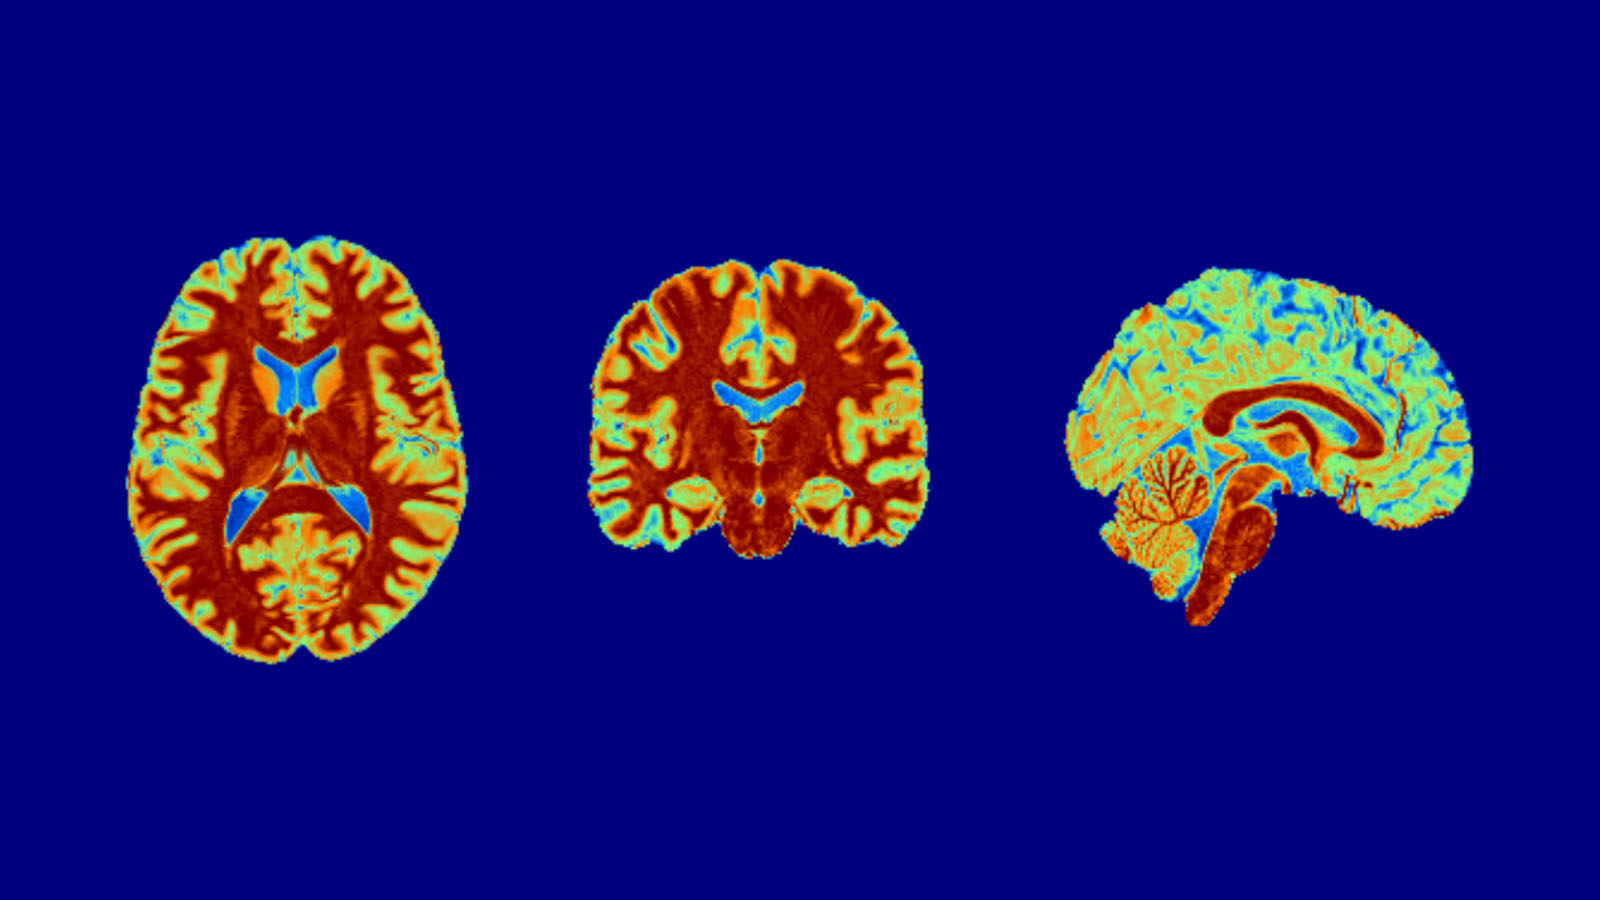 Structural brain scan